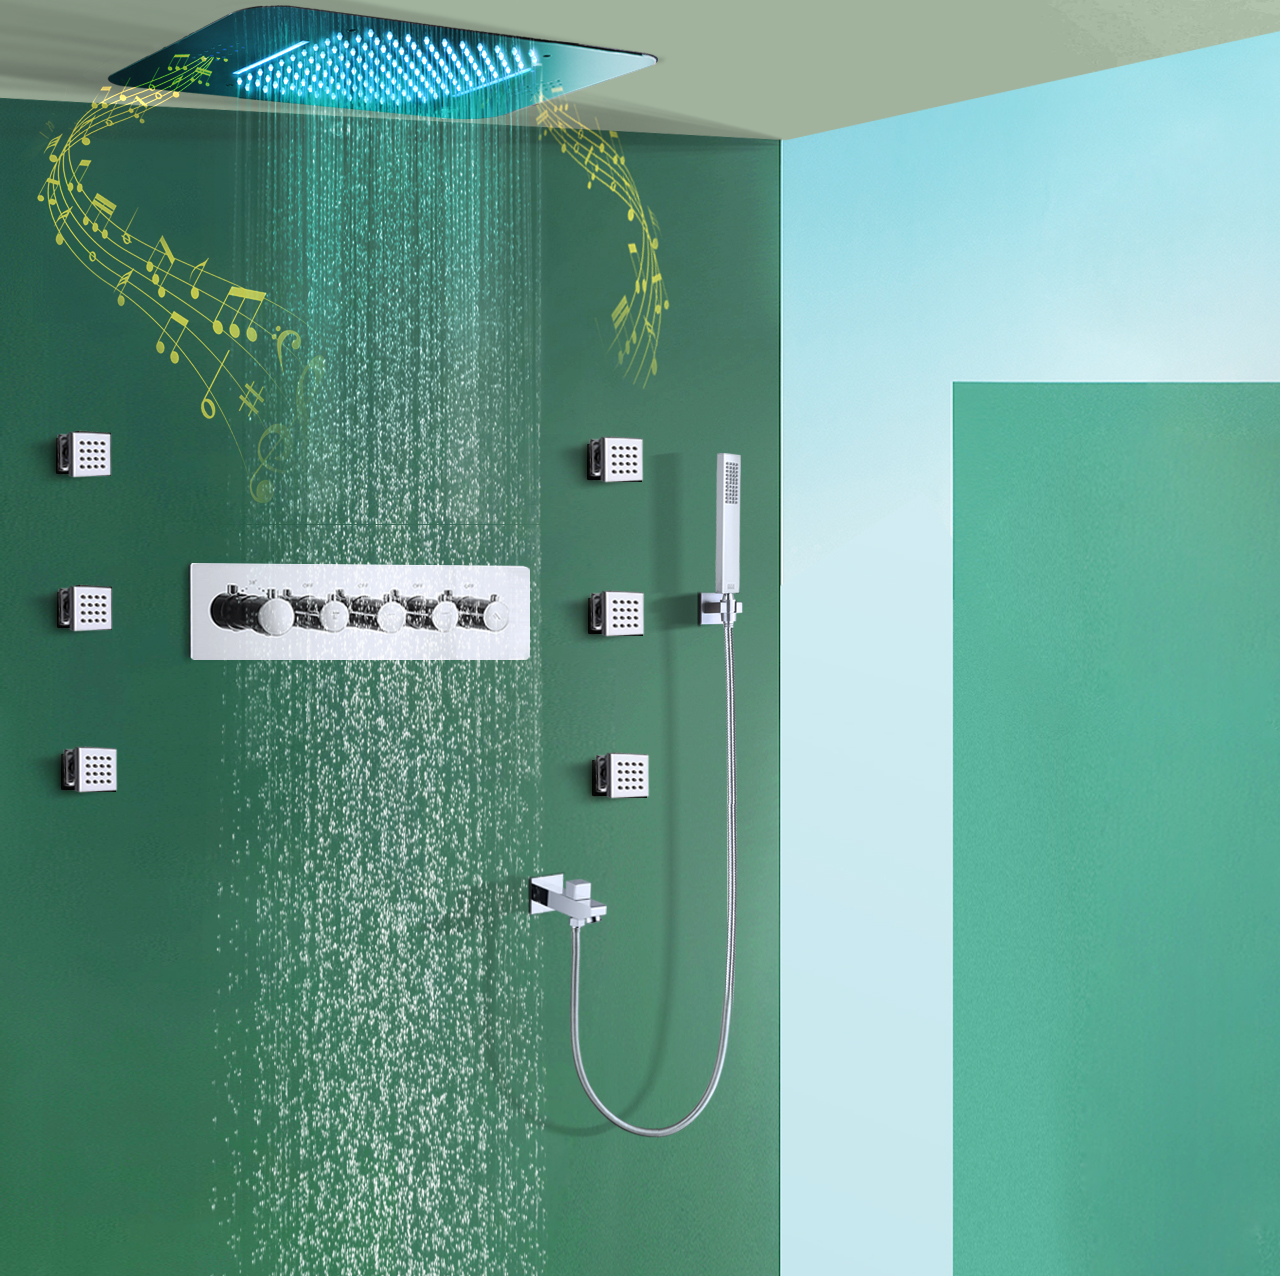 Cabezal de ducha con música LED integrado en el techo, juego de grifo de ducha con cuerpo principal de agua fría y caliente de lluvia y cascada de 580x380mm